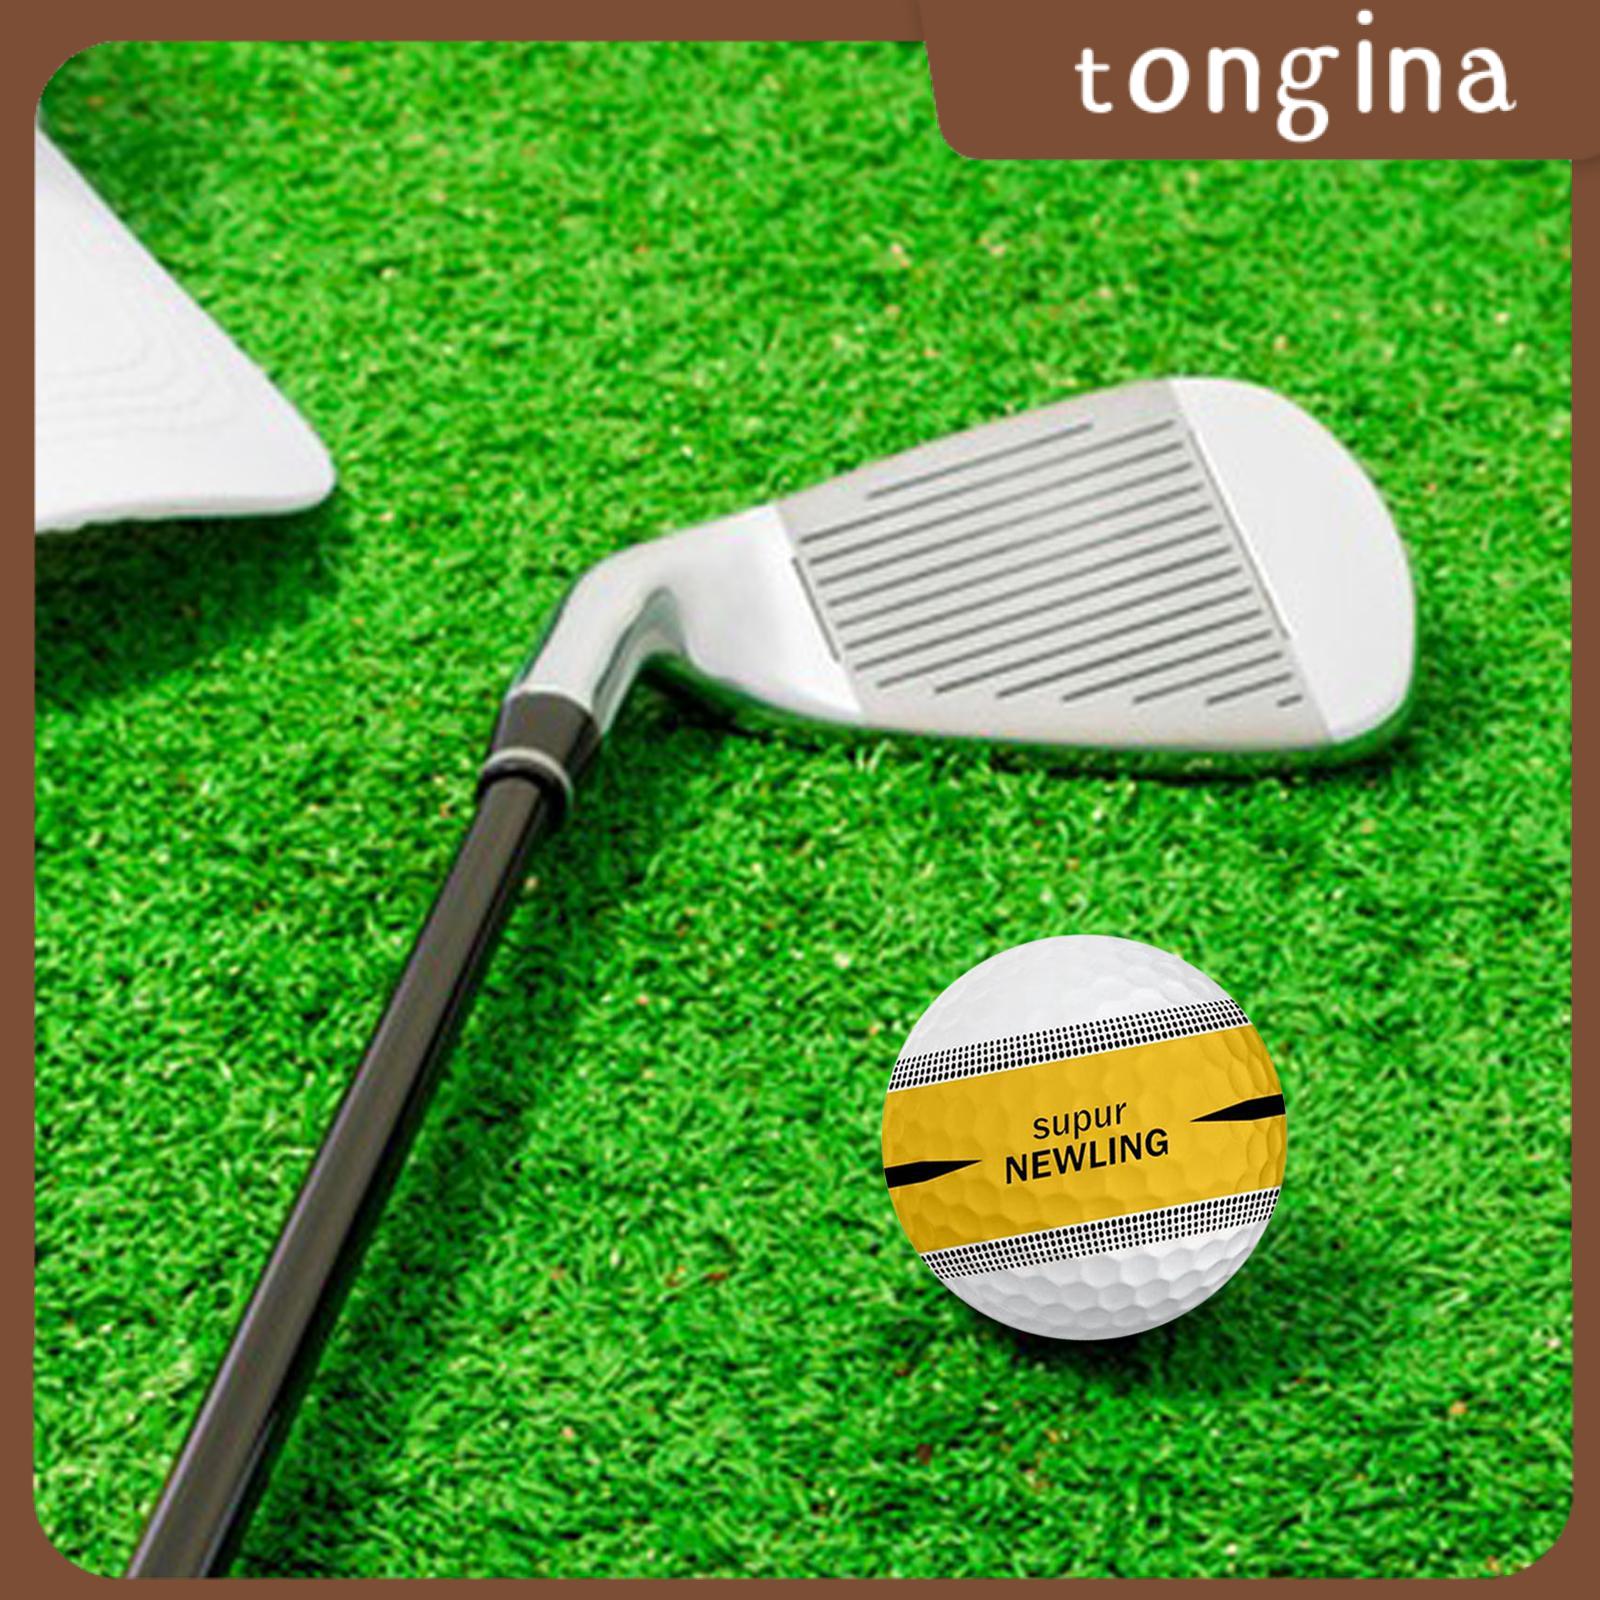 Tongina bóng gôn Golf chuyên nghiệp Bóng tập luyện trò chơi cạnh tranh bóng 1.65inch